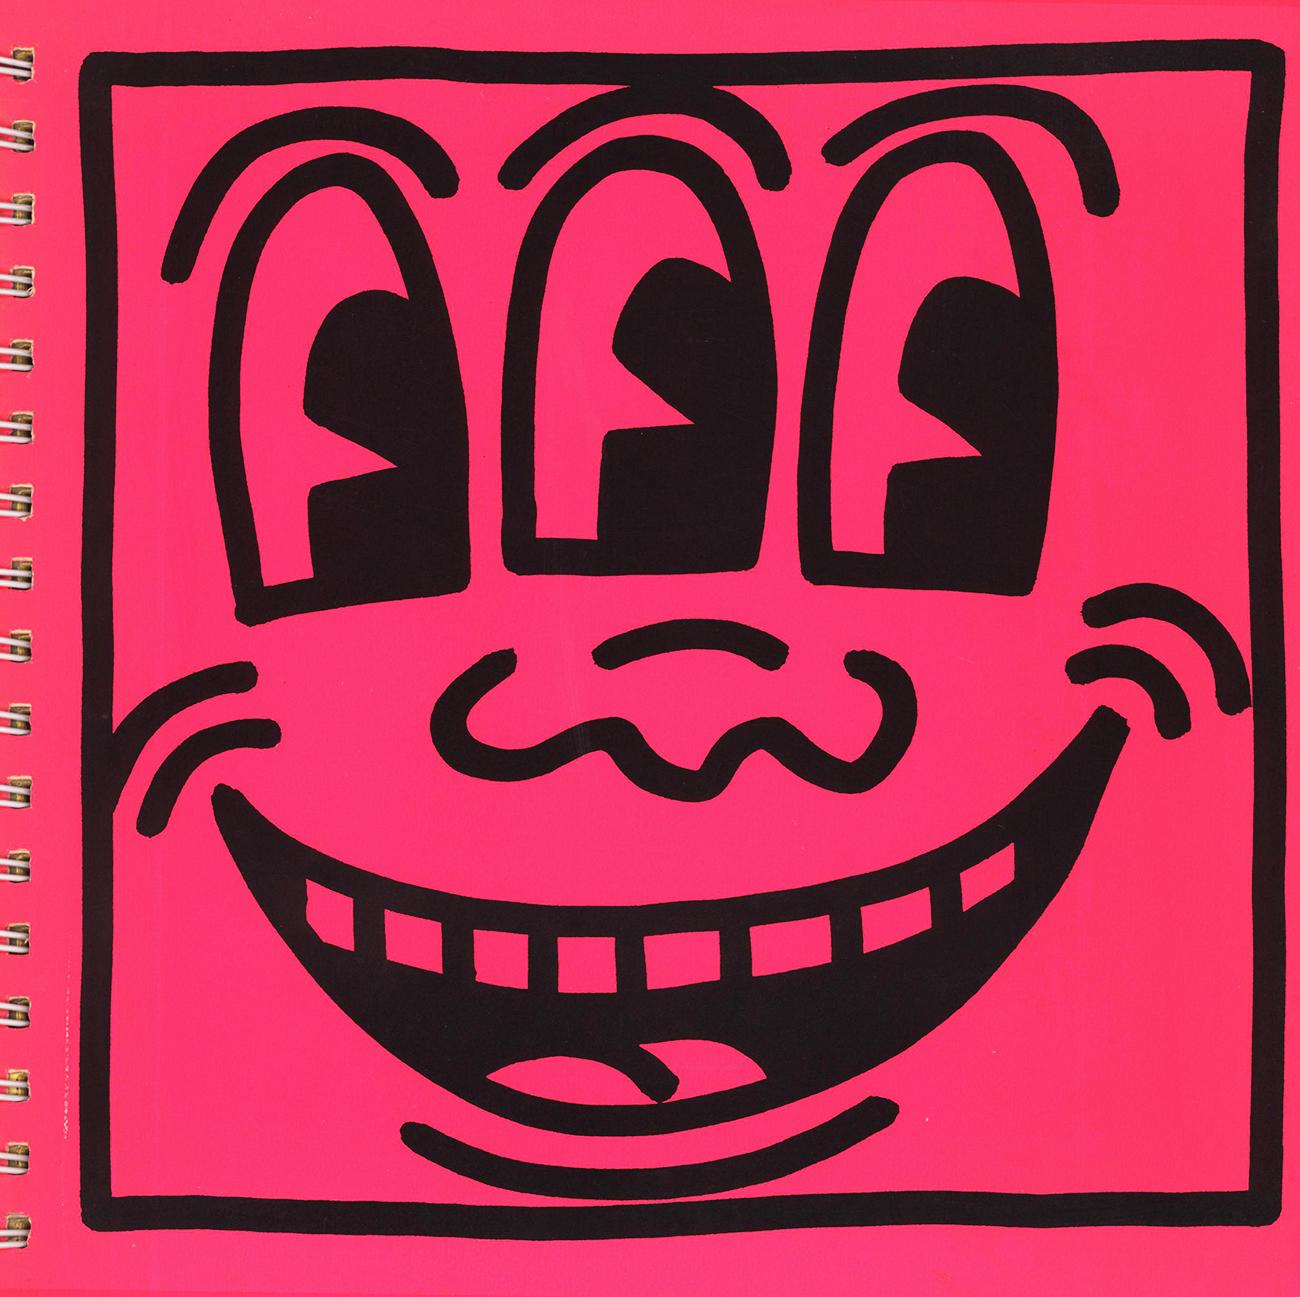 Keith Haring 1982 1ère édition (Keith Haring Tony Shafrazi Gallery) :
Le catalogue en édition limitée, qui a fait école et qui est très recherchée, avec la couverture iconique de Haring "Three Eyed Smiling Face" en néon et 15 encarts lithographiques